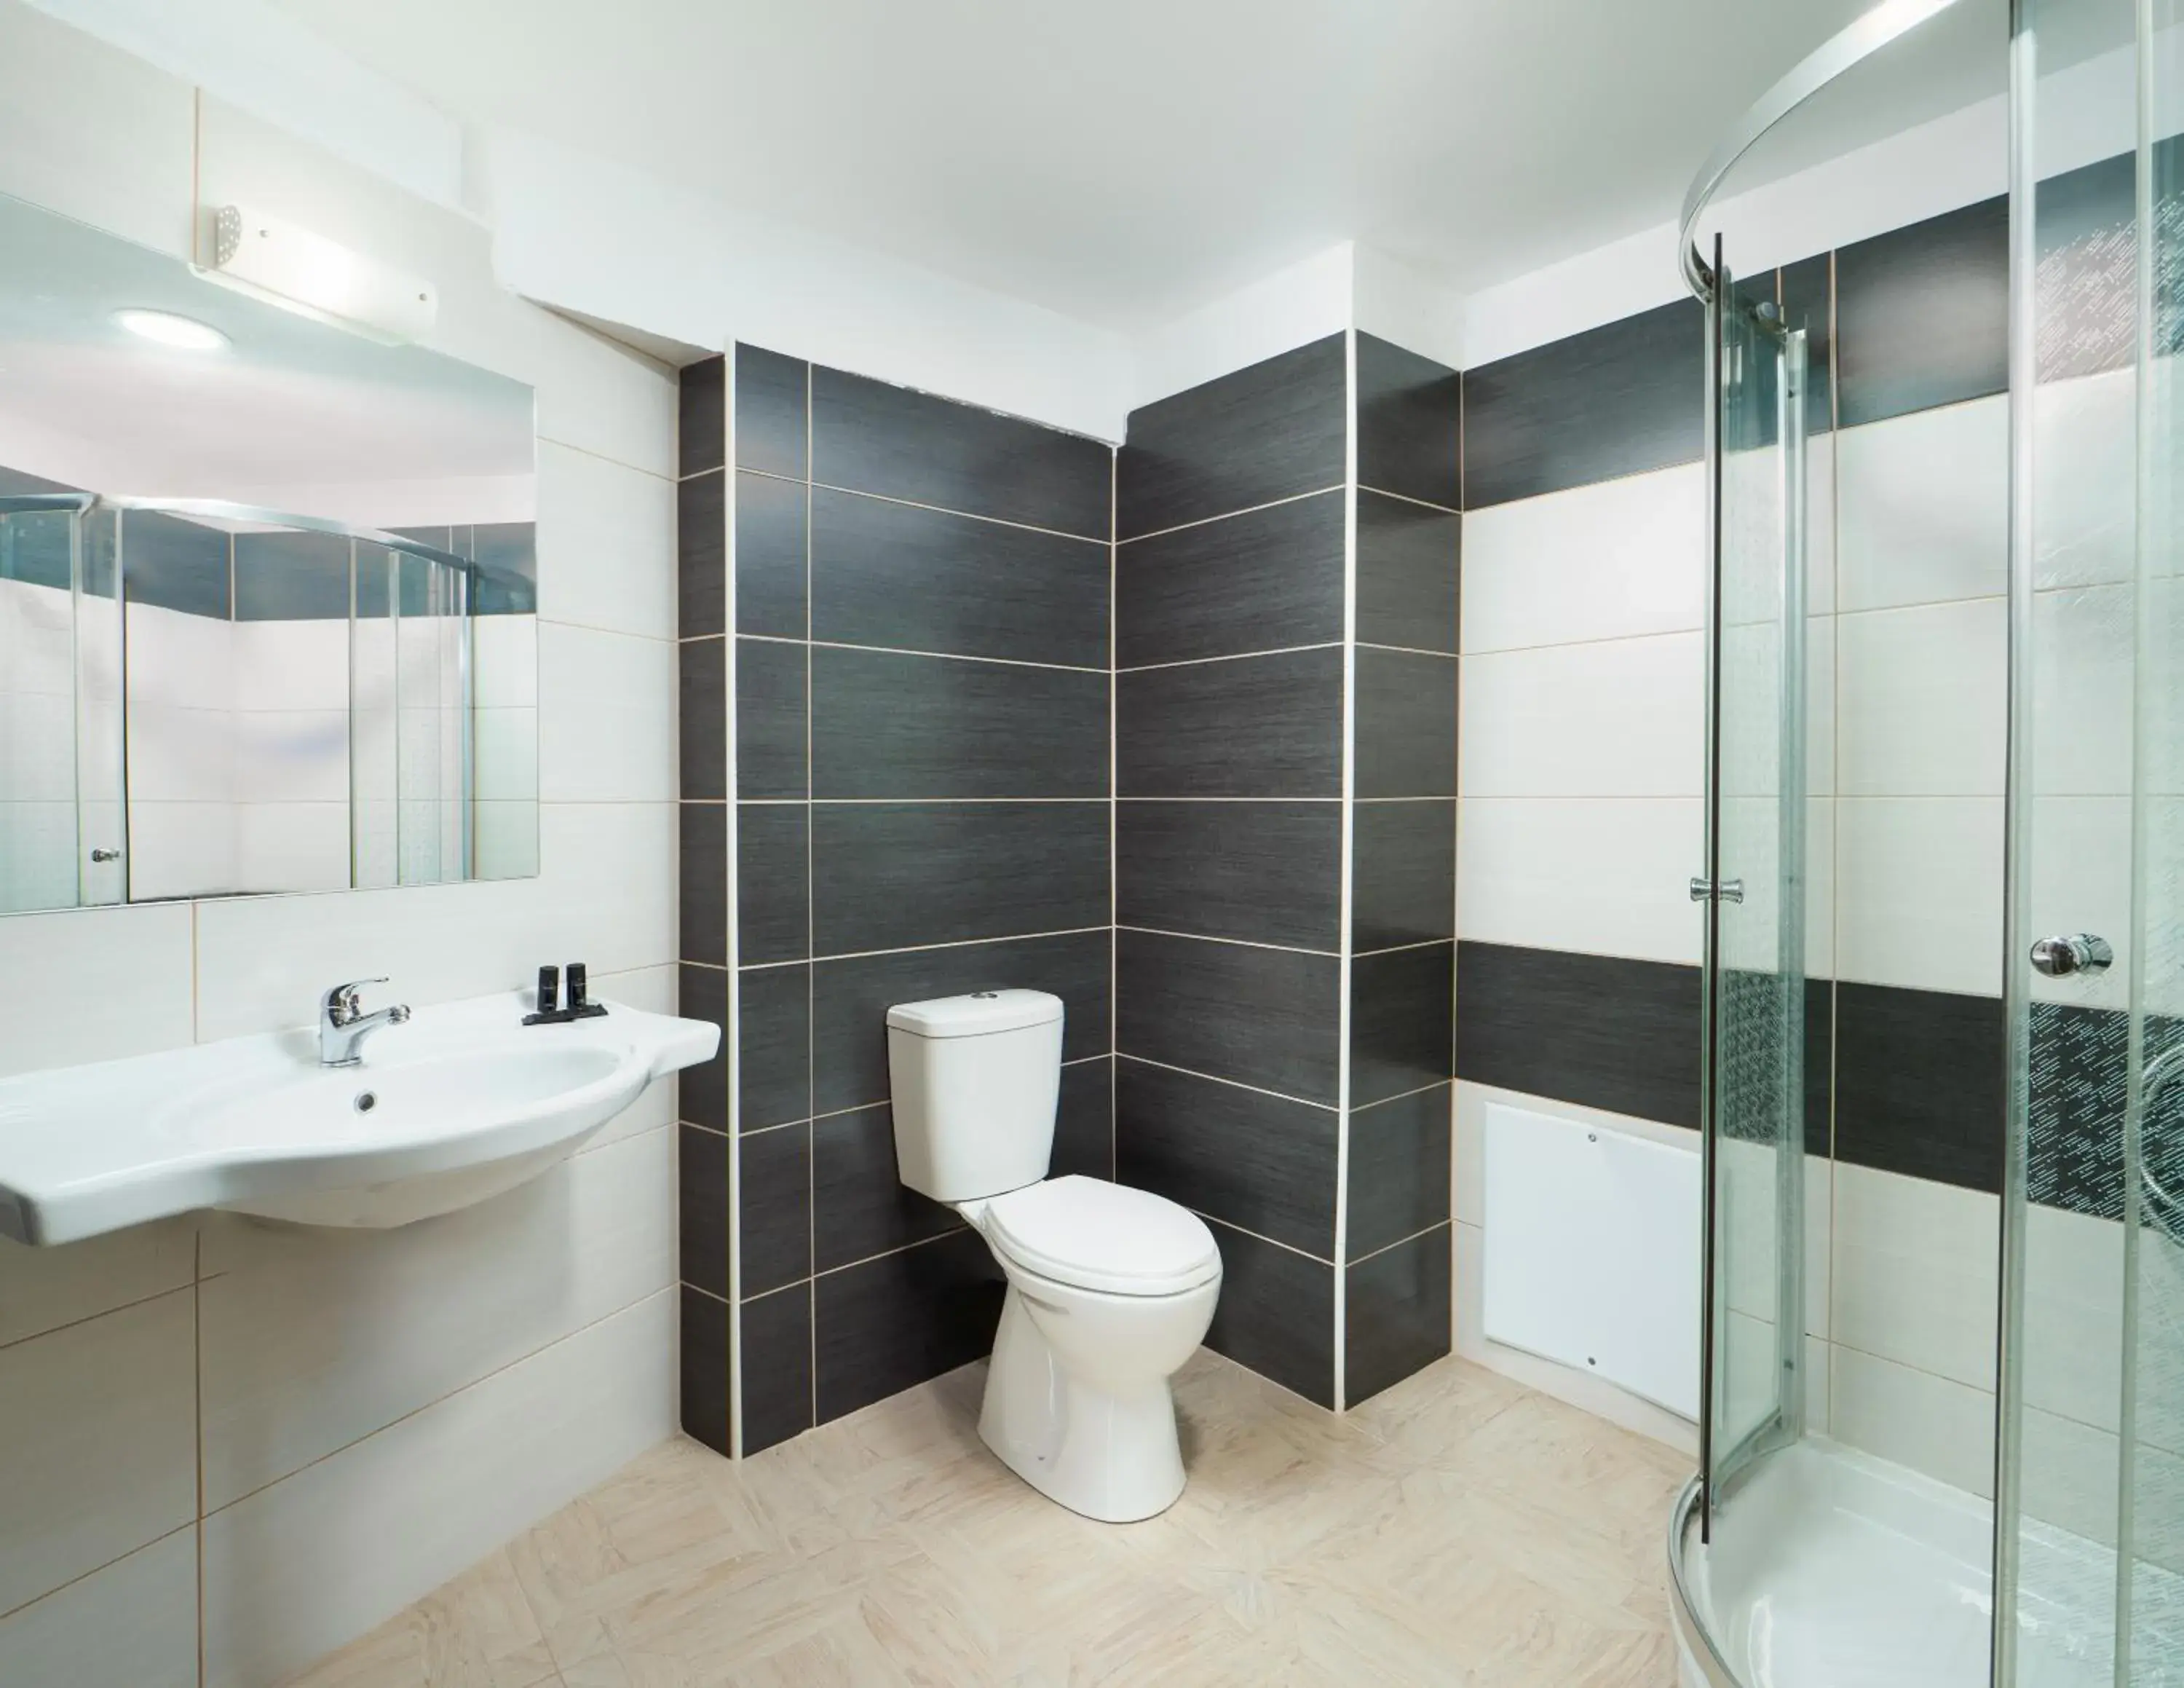 Shower, Bathroom in El Greco Hotel